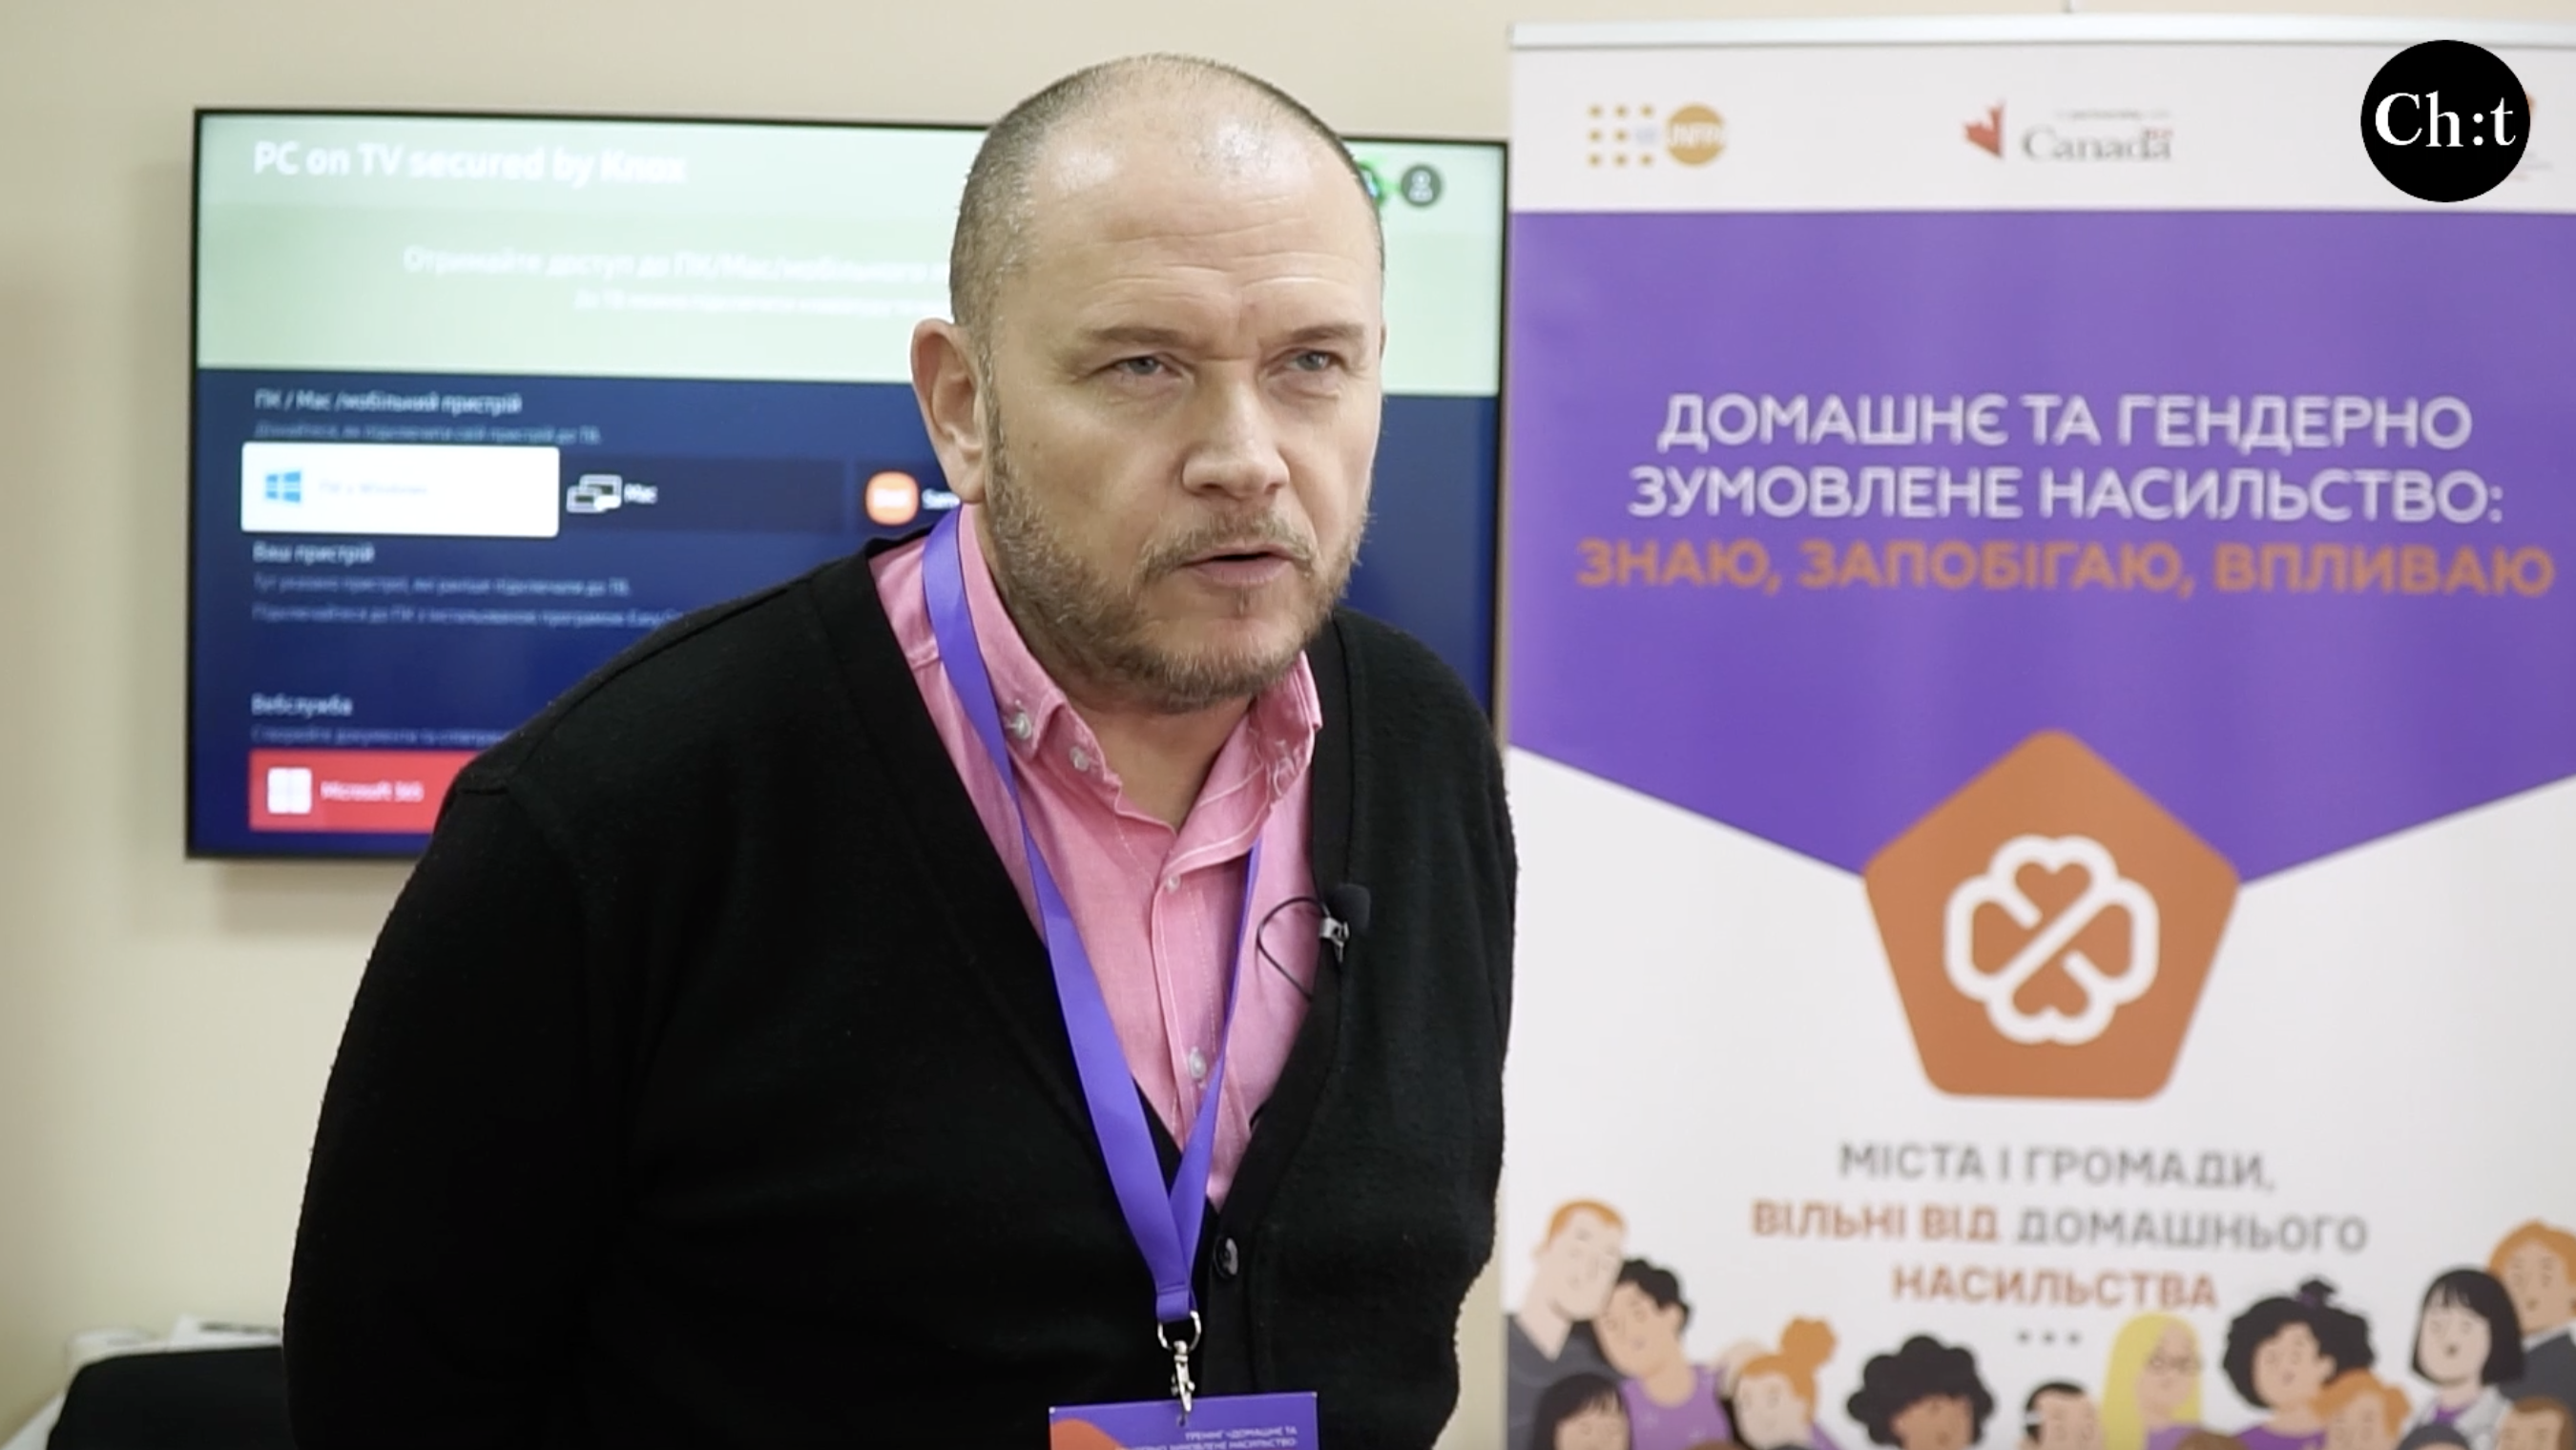 Сергій Велигодський, тренер Фонду ООН у галізу народонаселення України